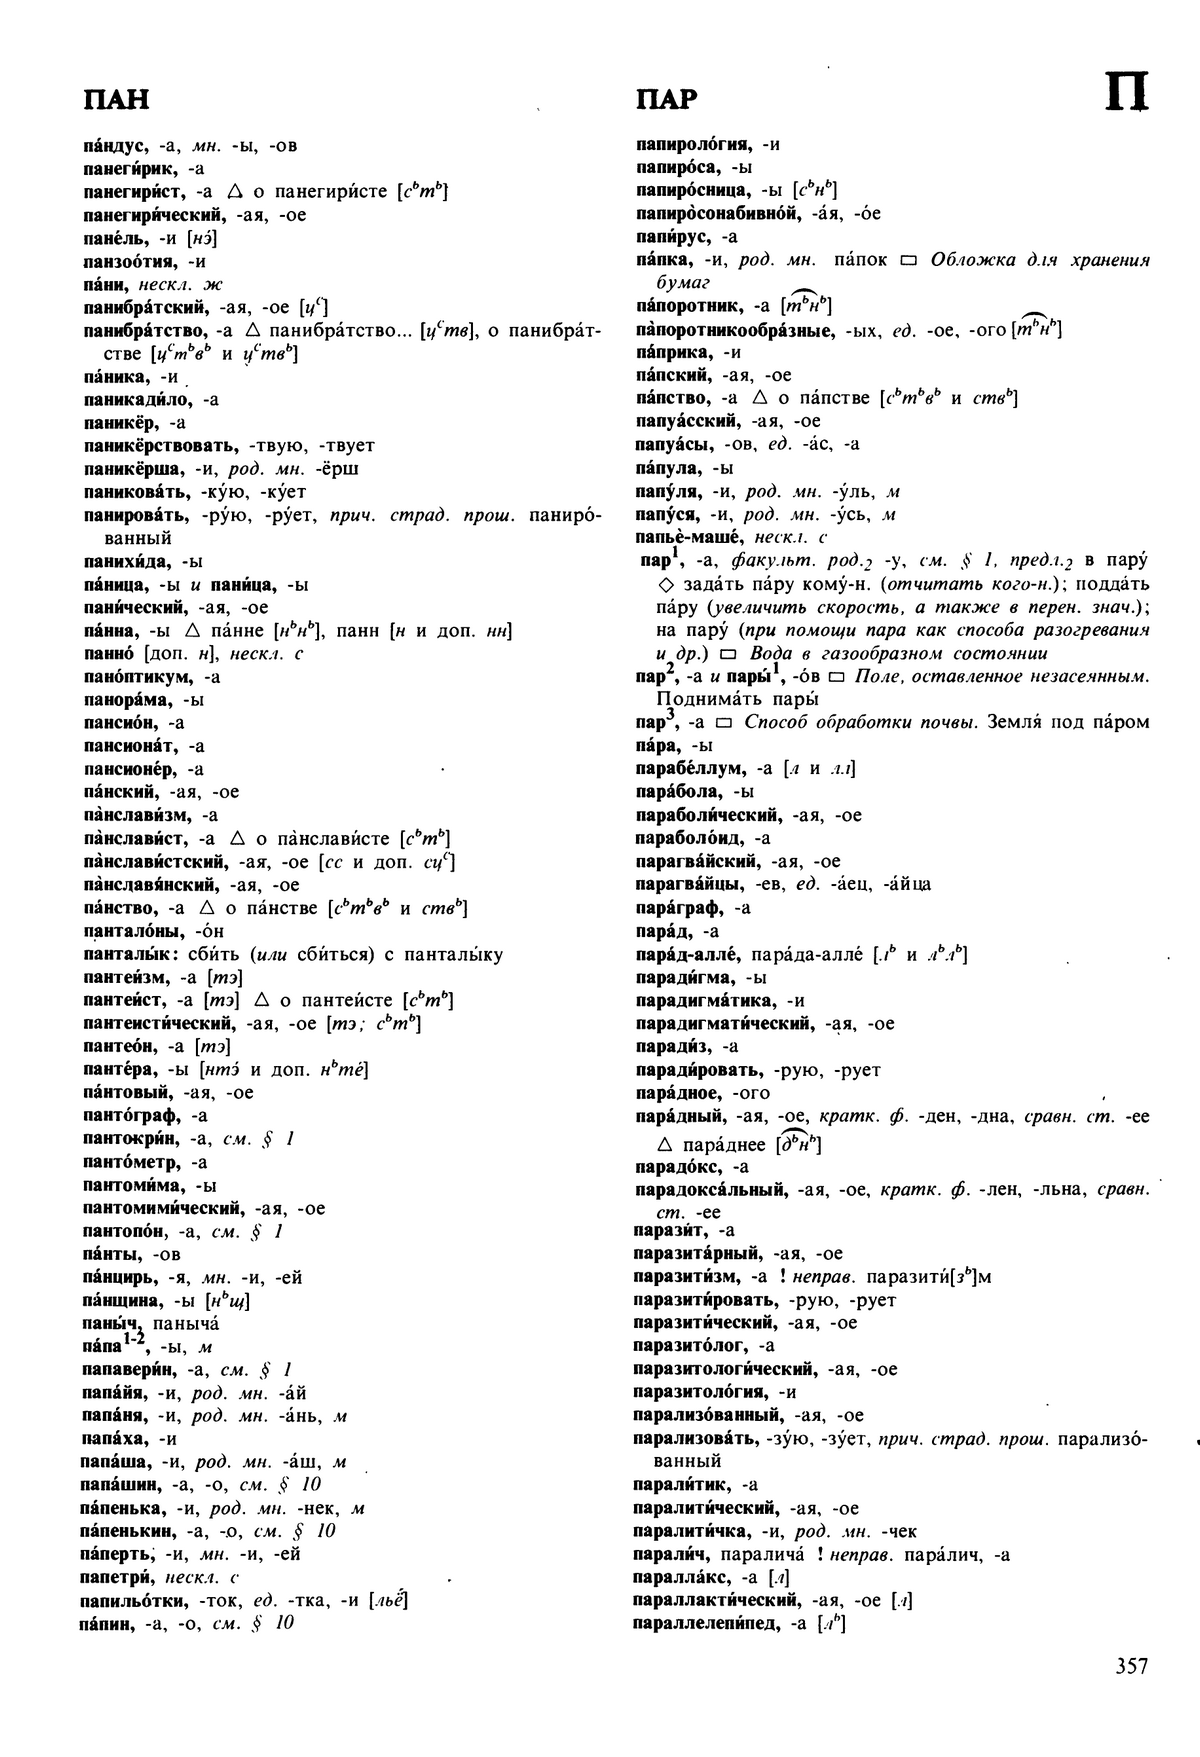 Фотокопия pdf / скан страницы 357 орфоэпического словаря под редакцией Аванесова (5 издание, 1989 год)